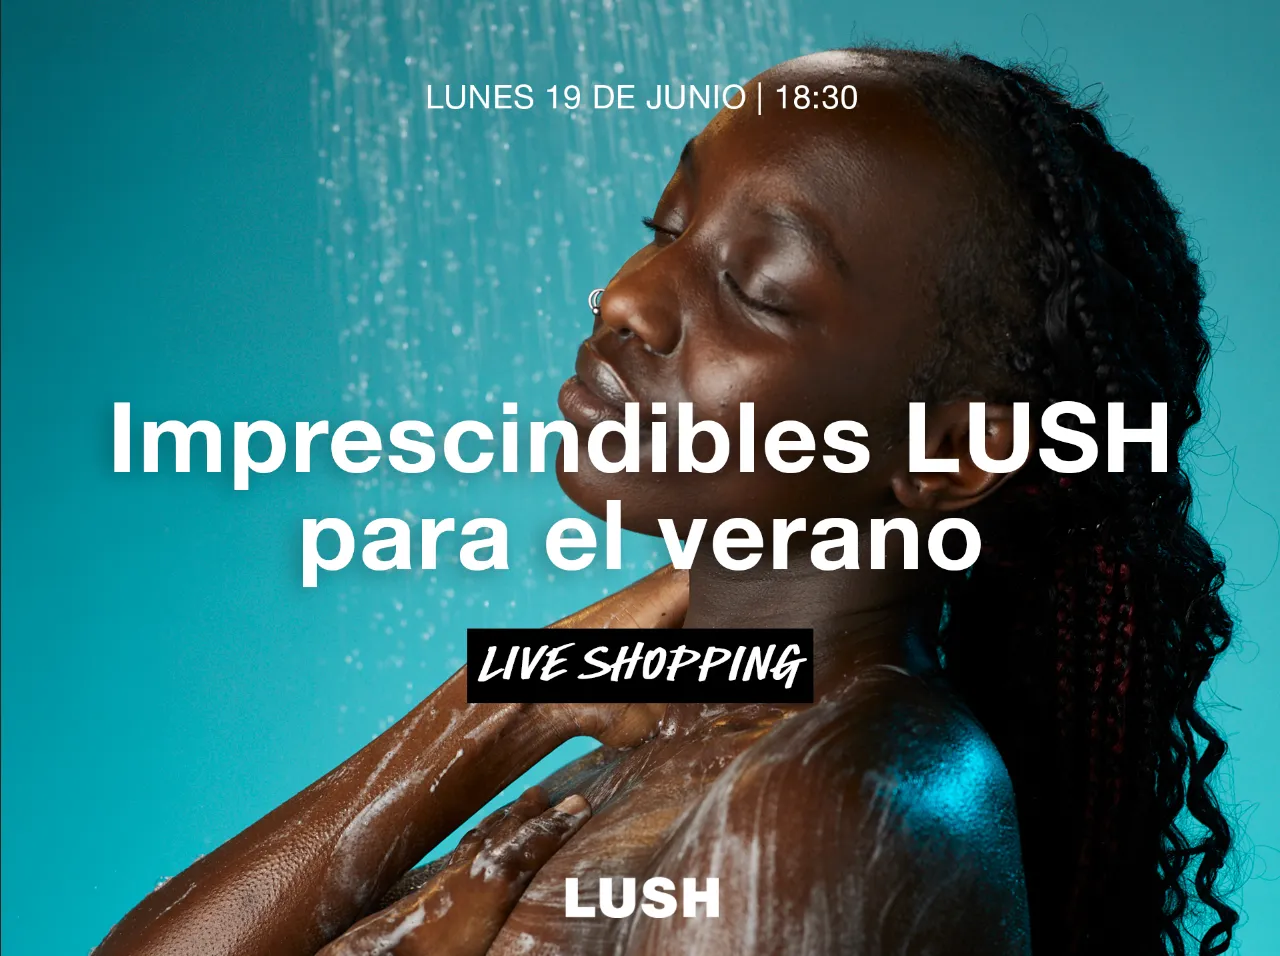 Imprescindibles Lush para el verano shoppable video